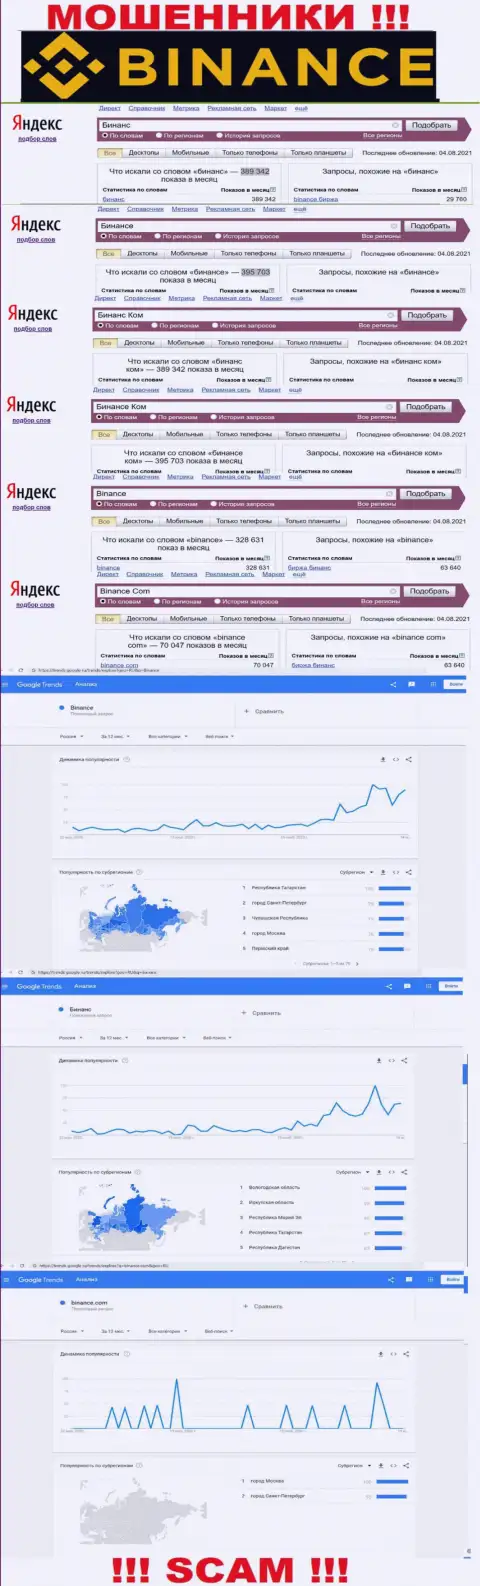 Статистические данные о запросах в поисковиках всемирной сети сведений об организации Binance